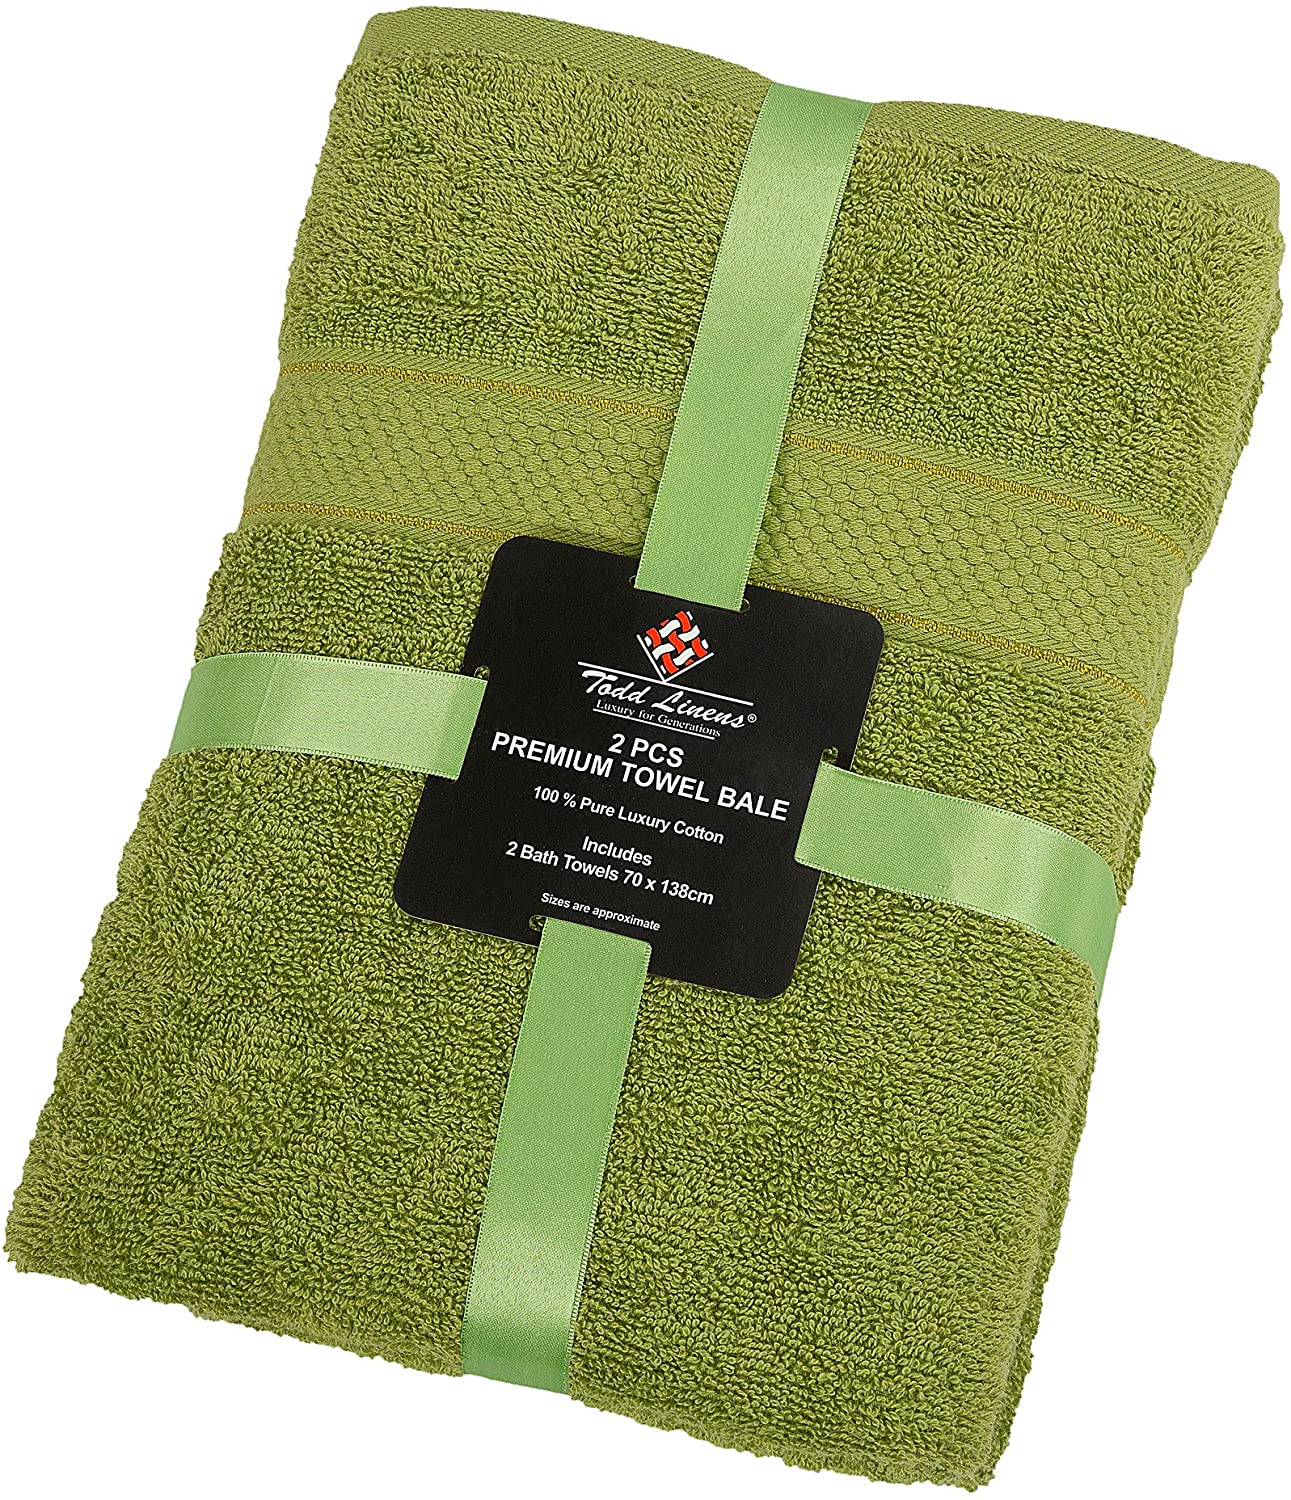 2 Pcs Bath Cotton Towel Bale Set Olive Plain